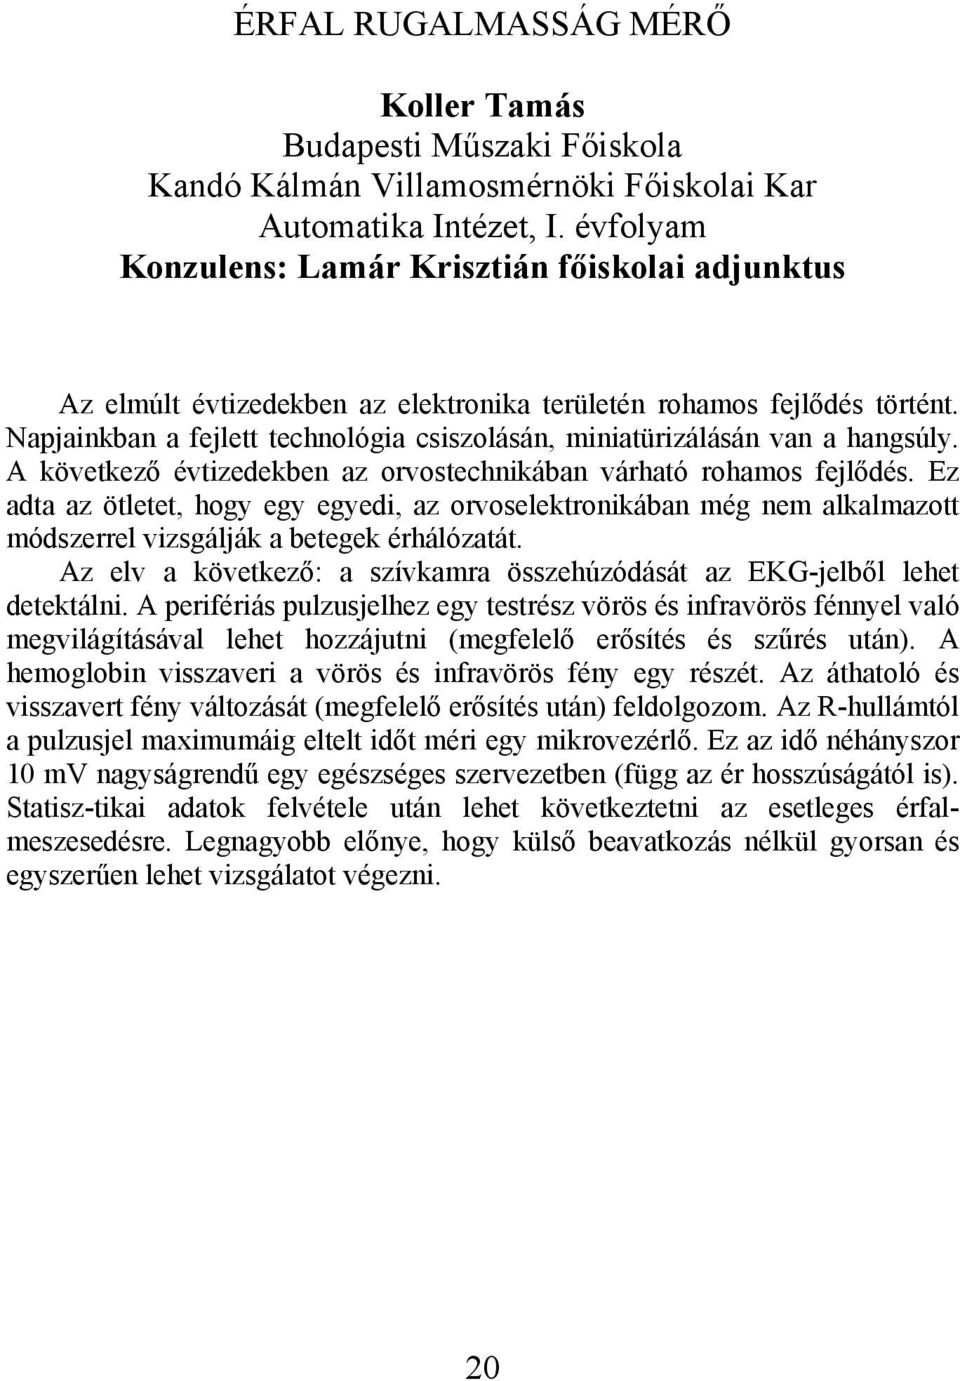 Kandó Kálmán Villamosmérnöki Főiskolai Kar - PDF Free Download